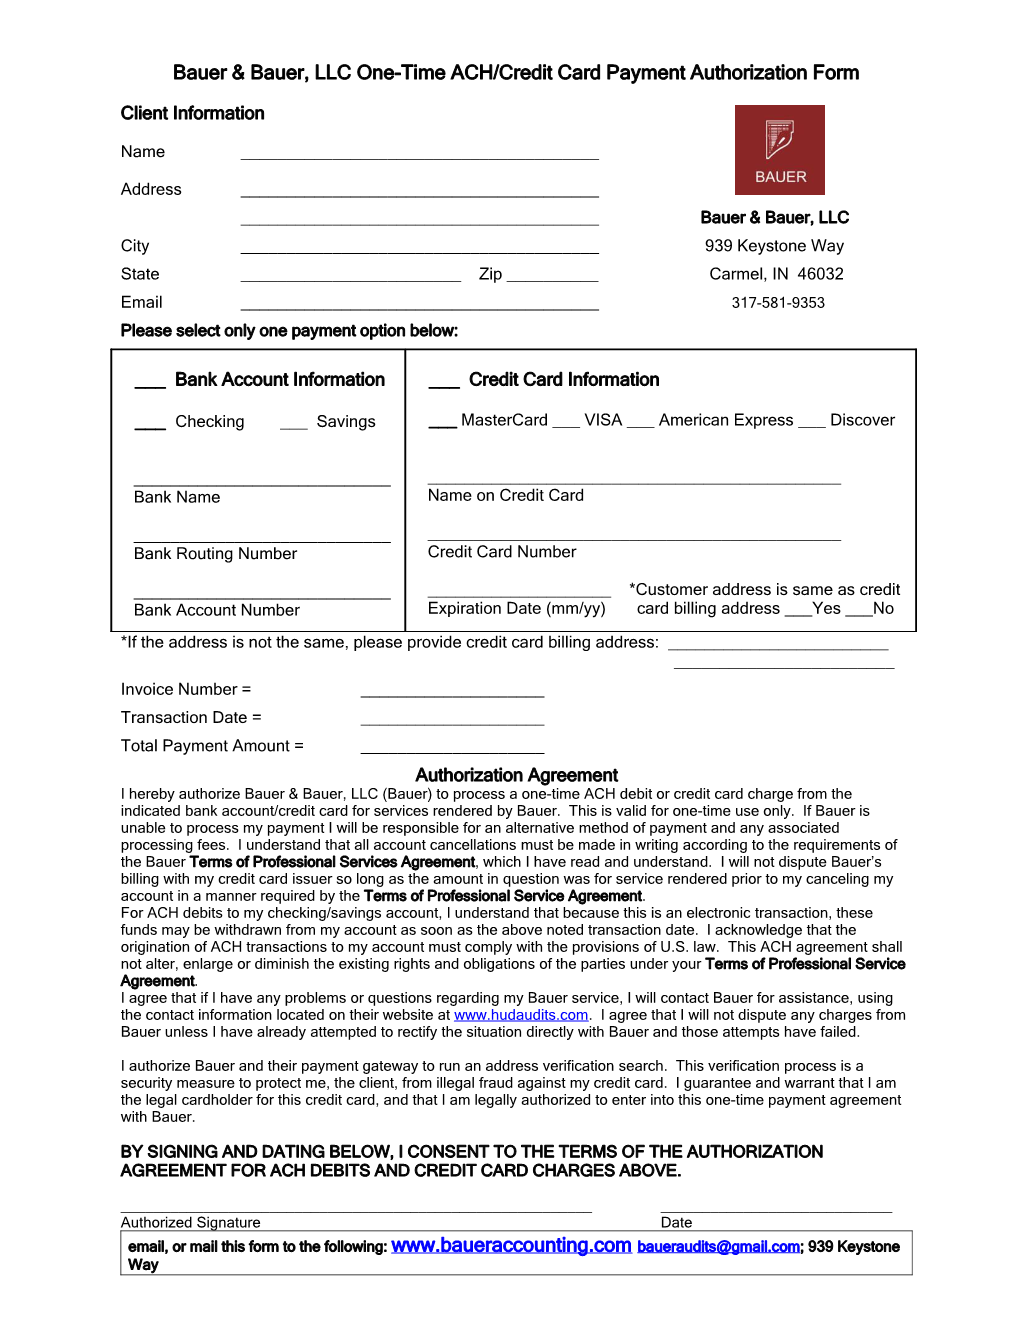 Bauer & Bauer, LLC Auto-Debit Recurring Billing Authorization Form